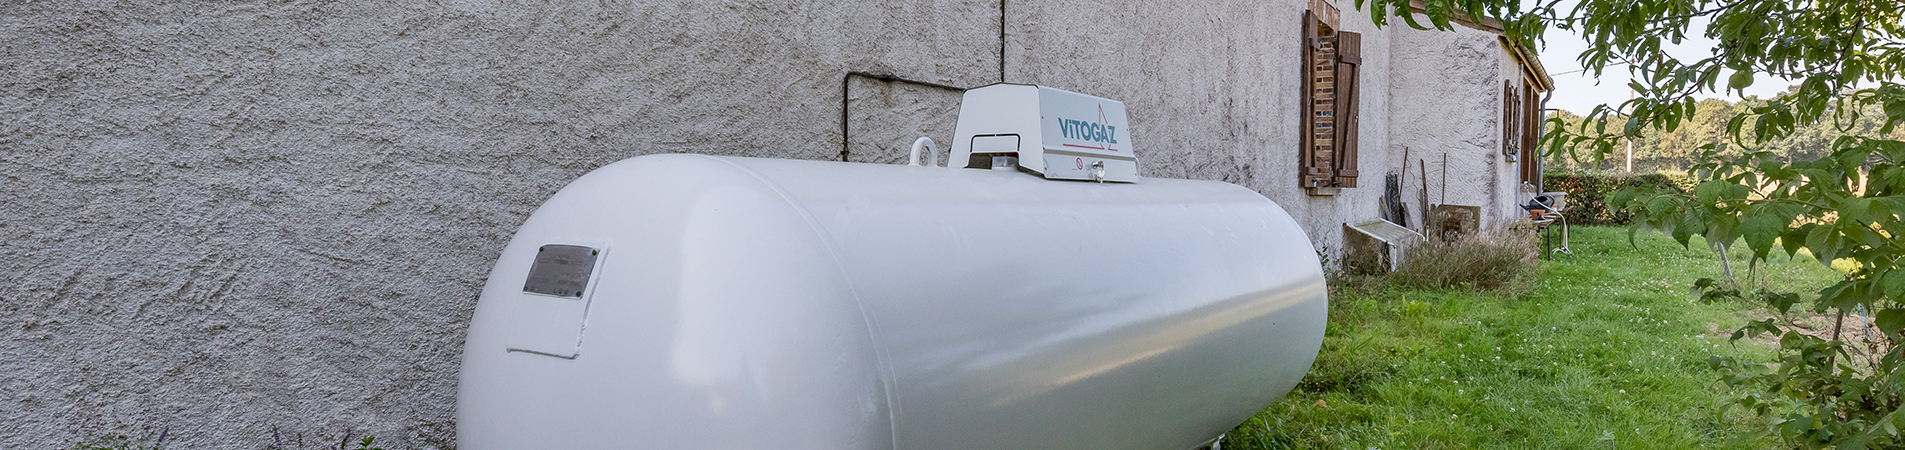 Citerne de gaz propane aérienne VITOGAZ FRANCE installée dans un jardin